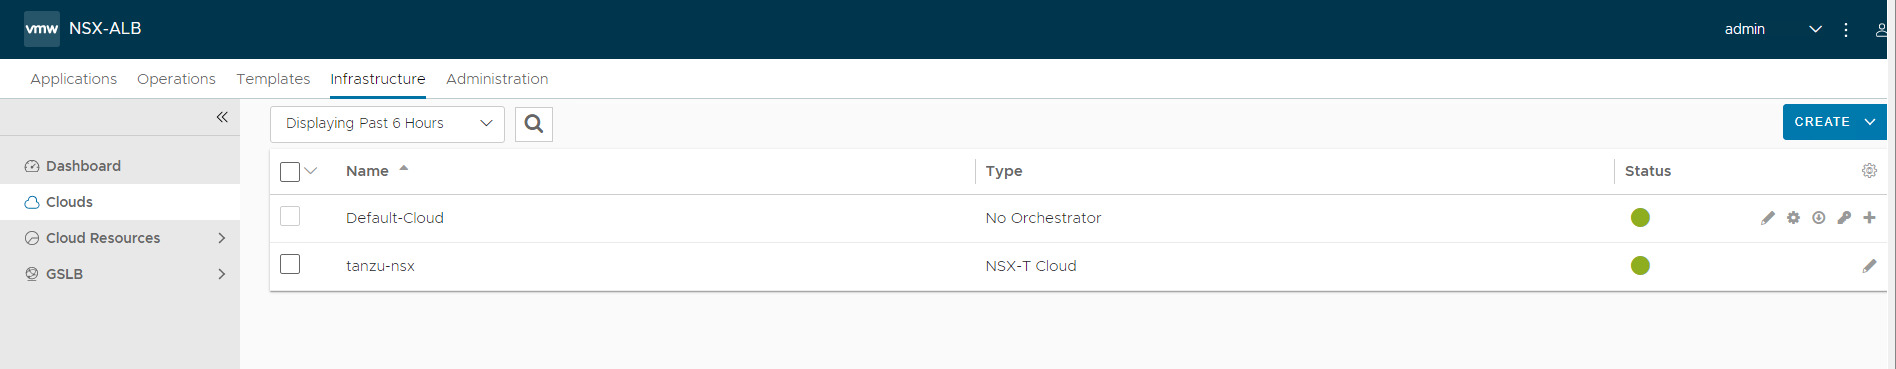 NSX-T cloud status